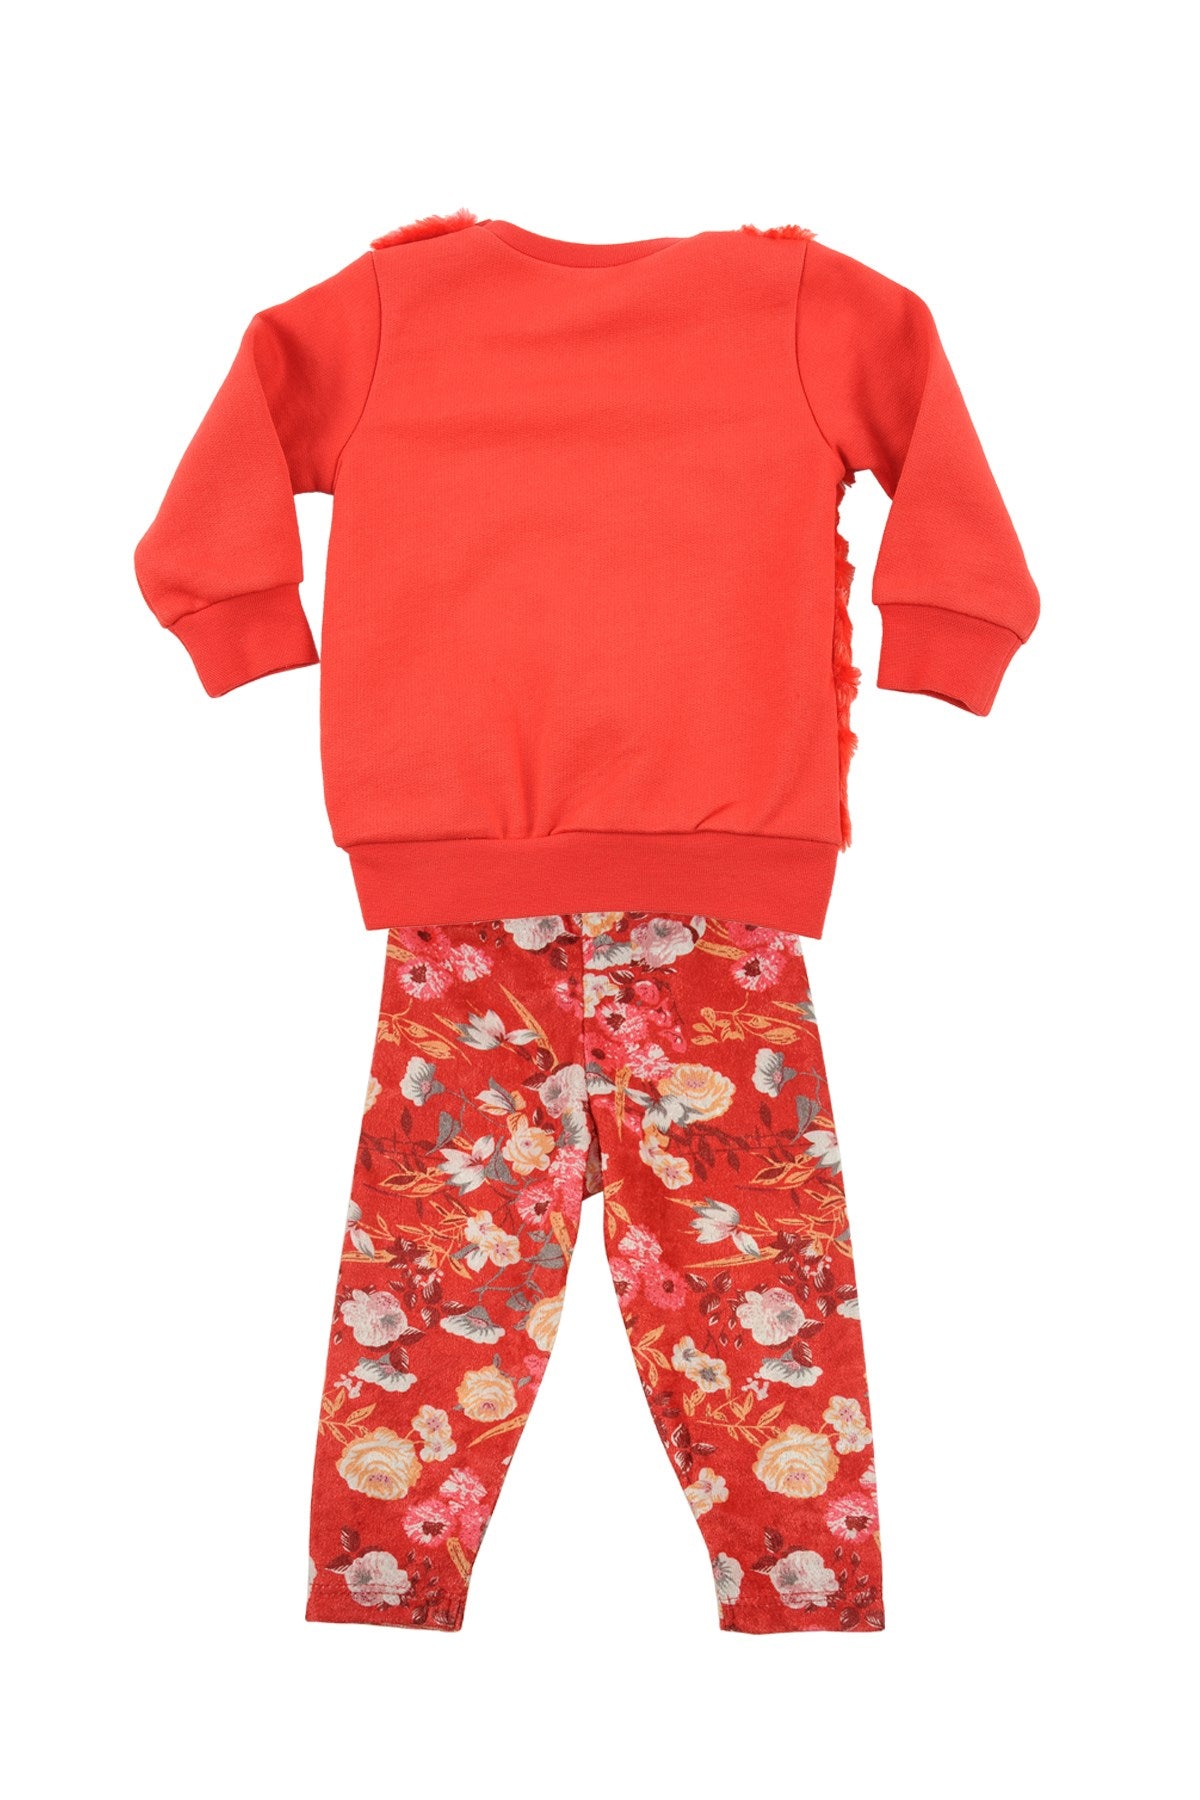 Kız Bebek Kırmızı Peluş Sweatshirt ve Çiçekli Tayt Takım (6ay-4yaş)-1